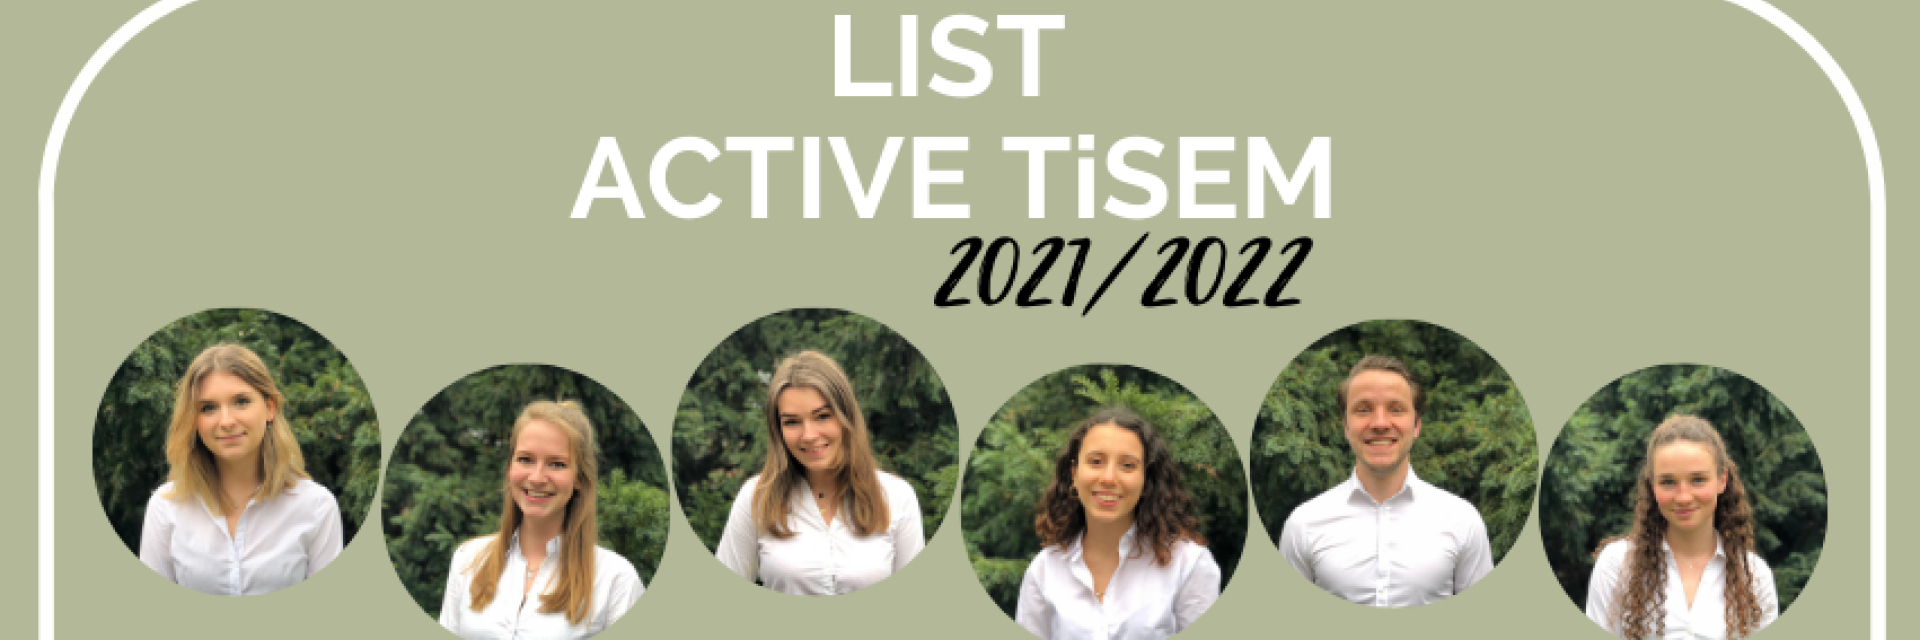 Stem op Active TiSEM bij de verkiezingen van 2021